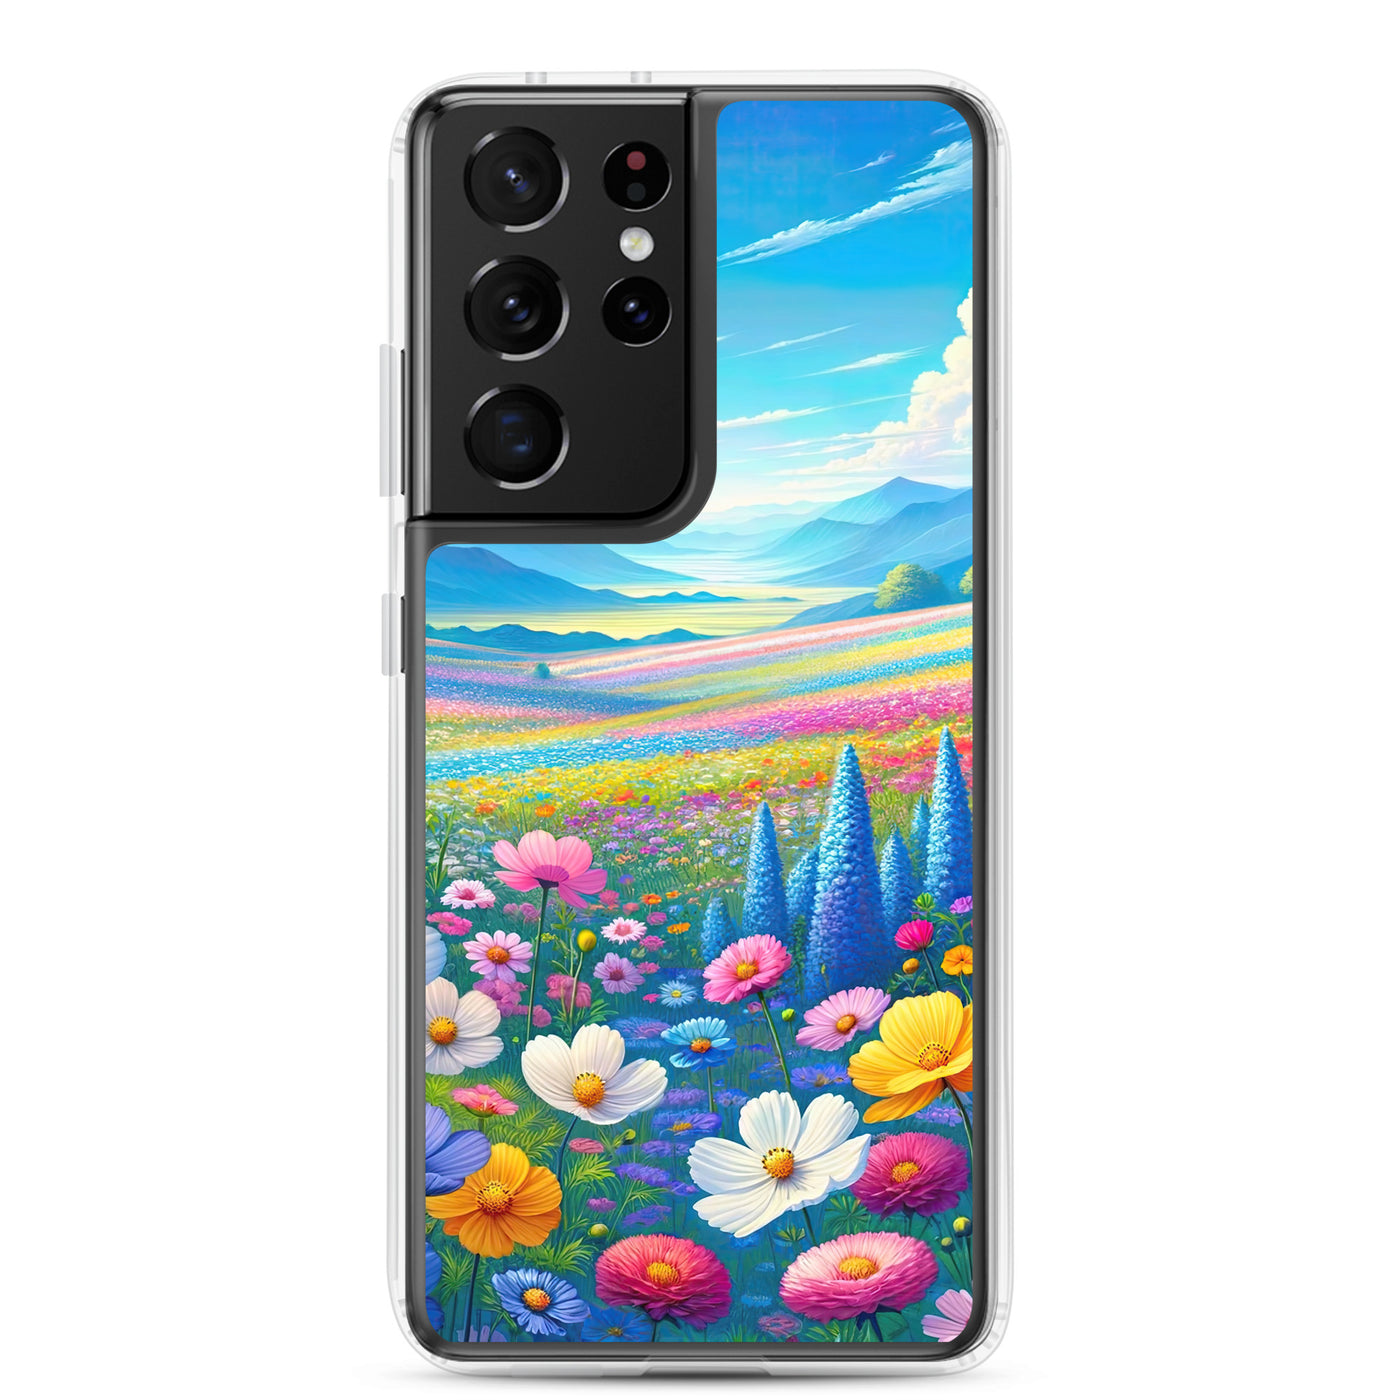 Weitläufiges Blumenfeld unter himmelblauem Himmel, leuchtende Flora - Samsung Schutzhülle (durchsichtig) camping xxx yyy zzz Samsung Galaxy S21 Ultra